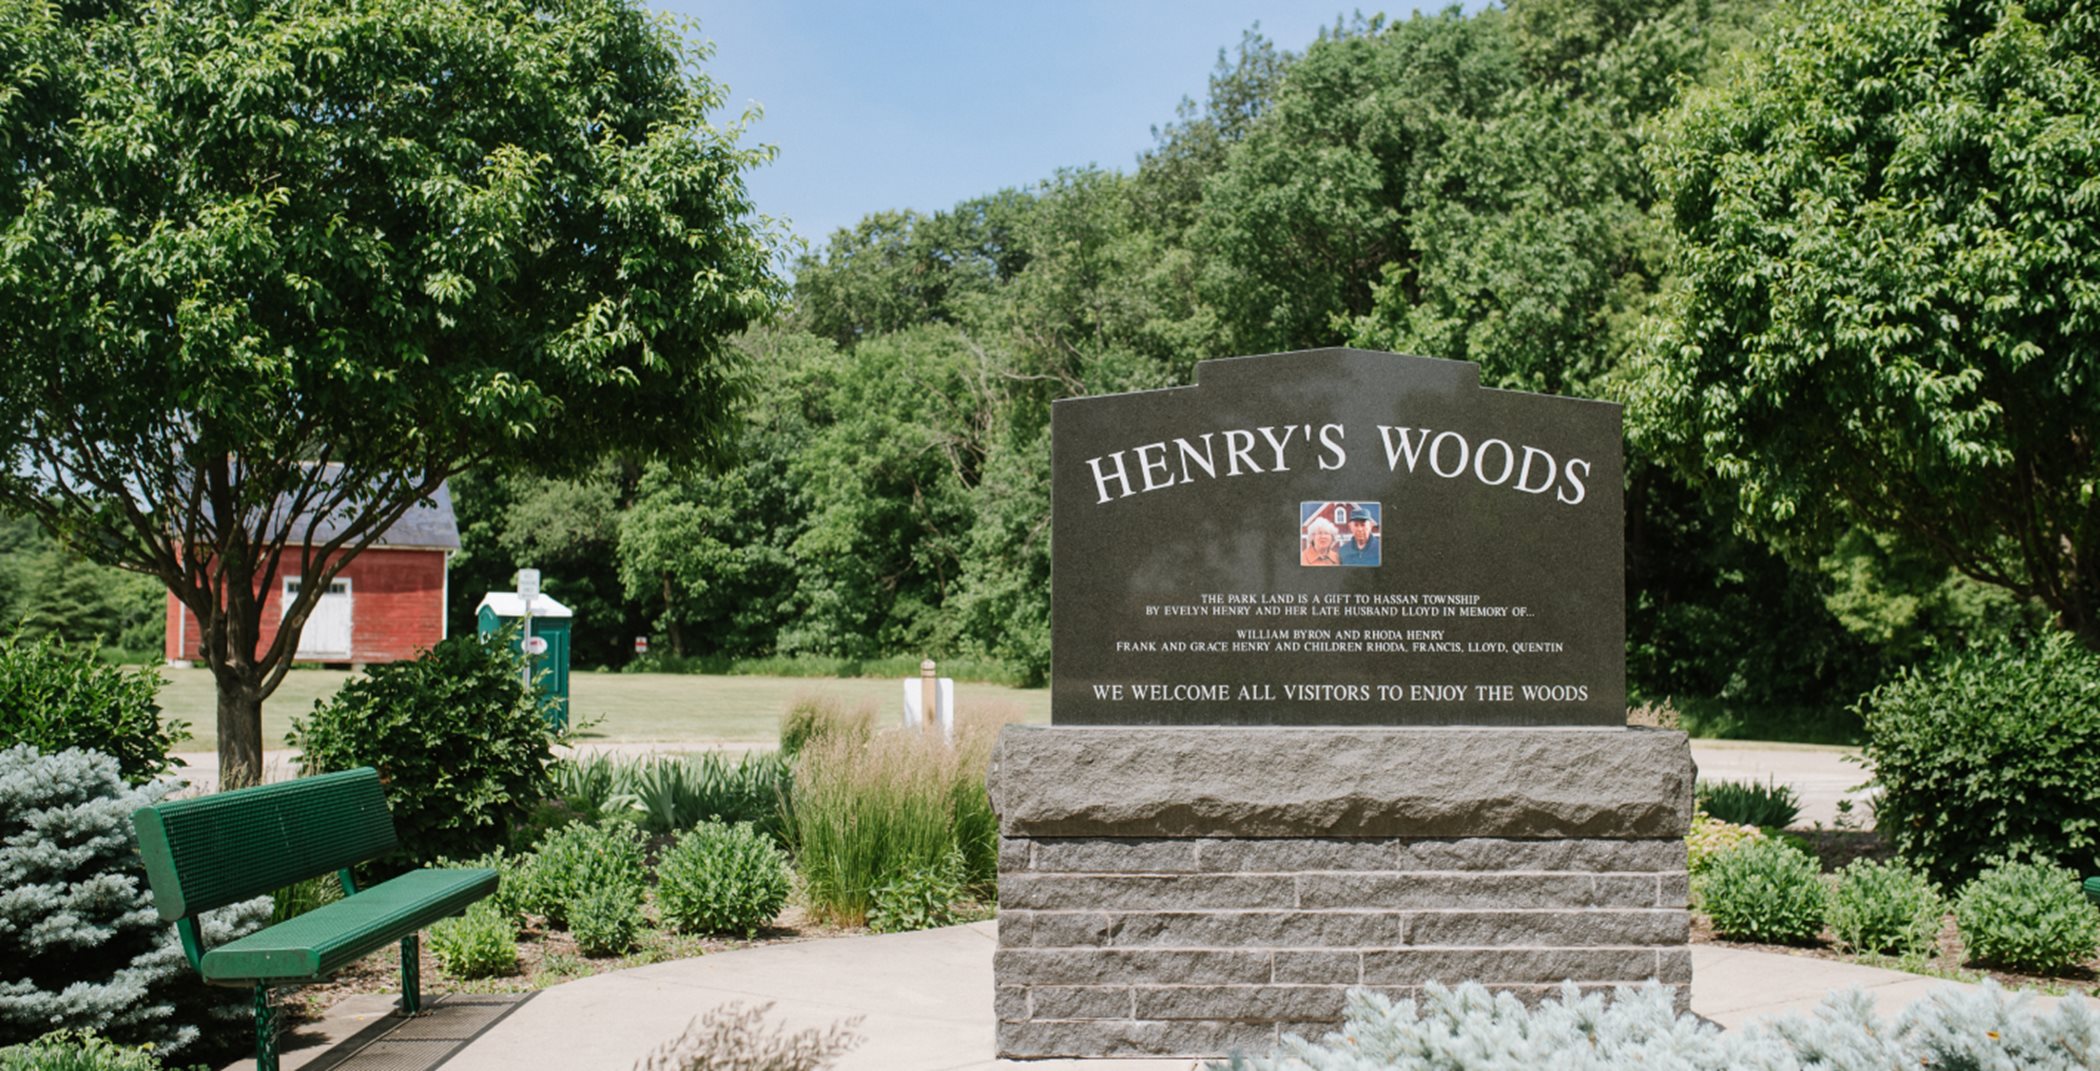 45-acre Henry's Woods Park